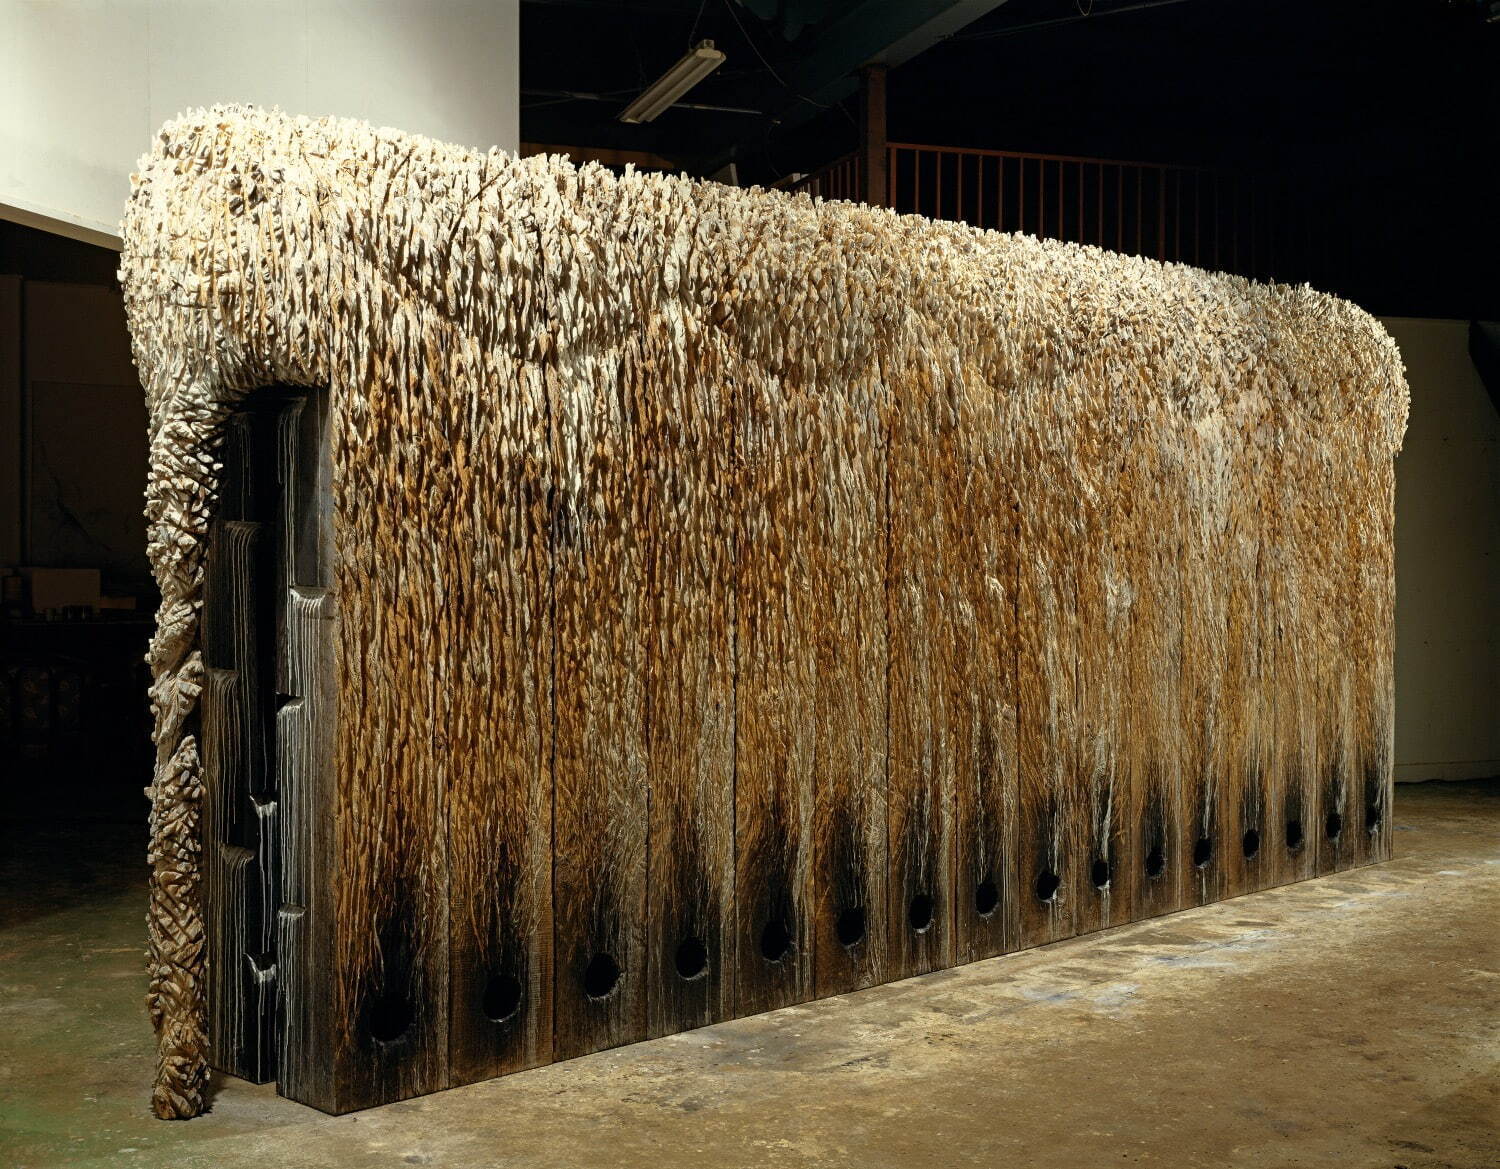 戸谷成雄《森の象の窯の死》1989年
230×560×62cm 木、灰、アクリル 東京都現代美術館蔵
撮影：山本糾